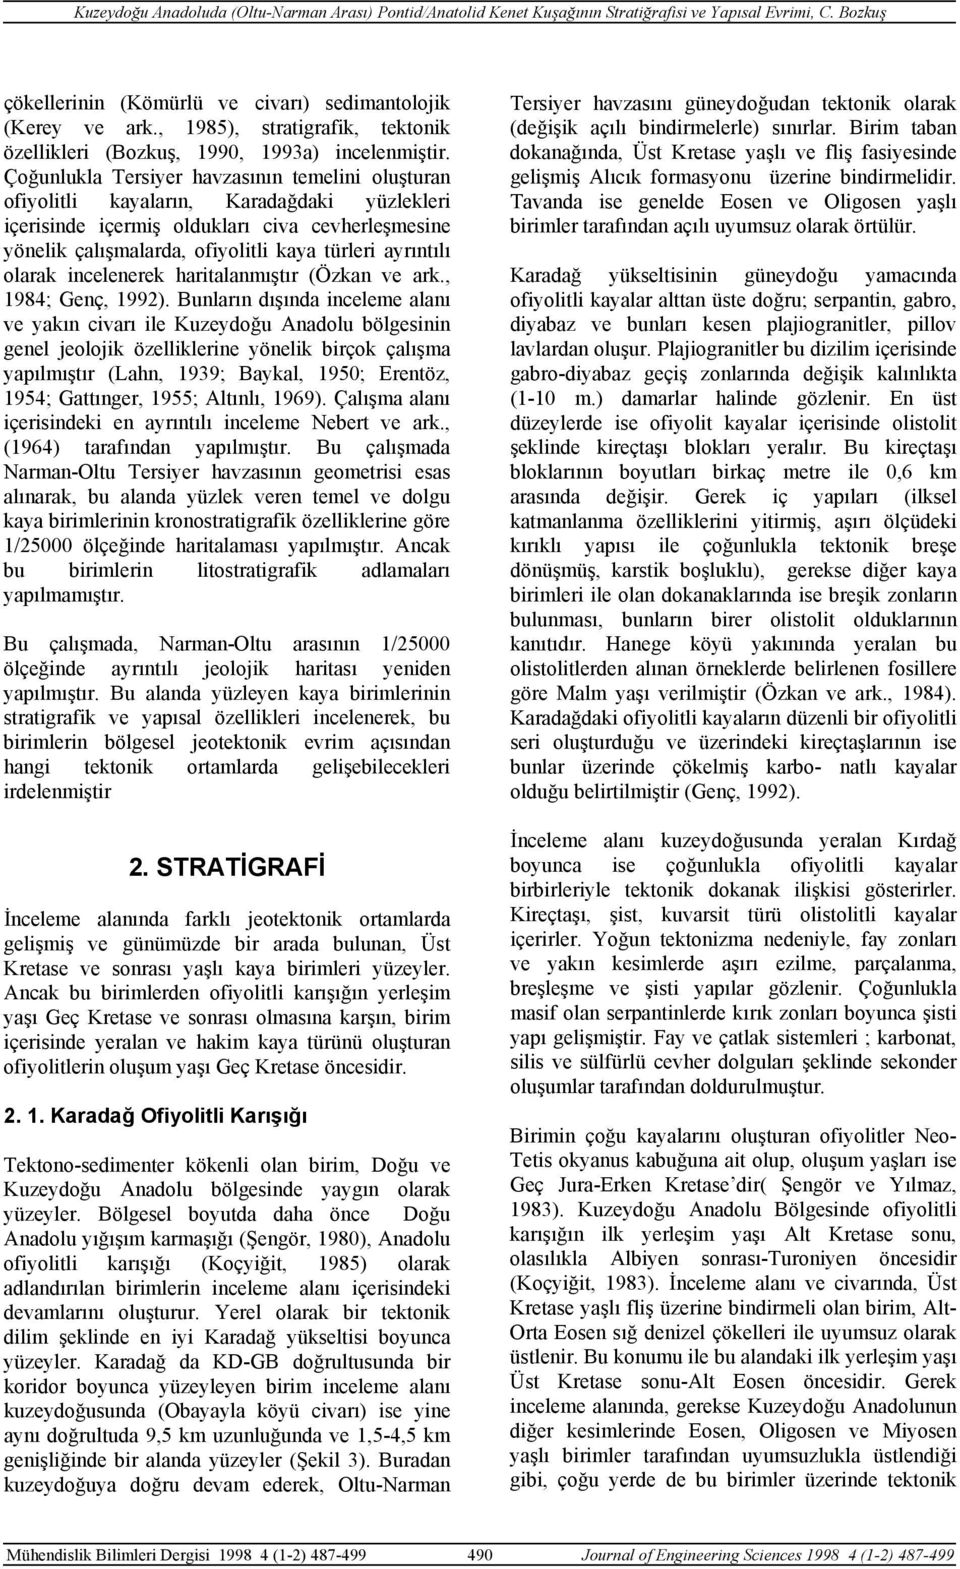 ayrıntılı olarak incelenerek haritalanmıştır (Özkan ve ark., 1984; Genç, 1992).